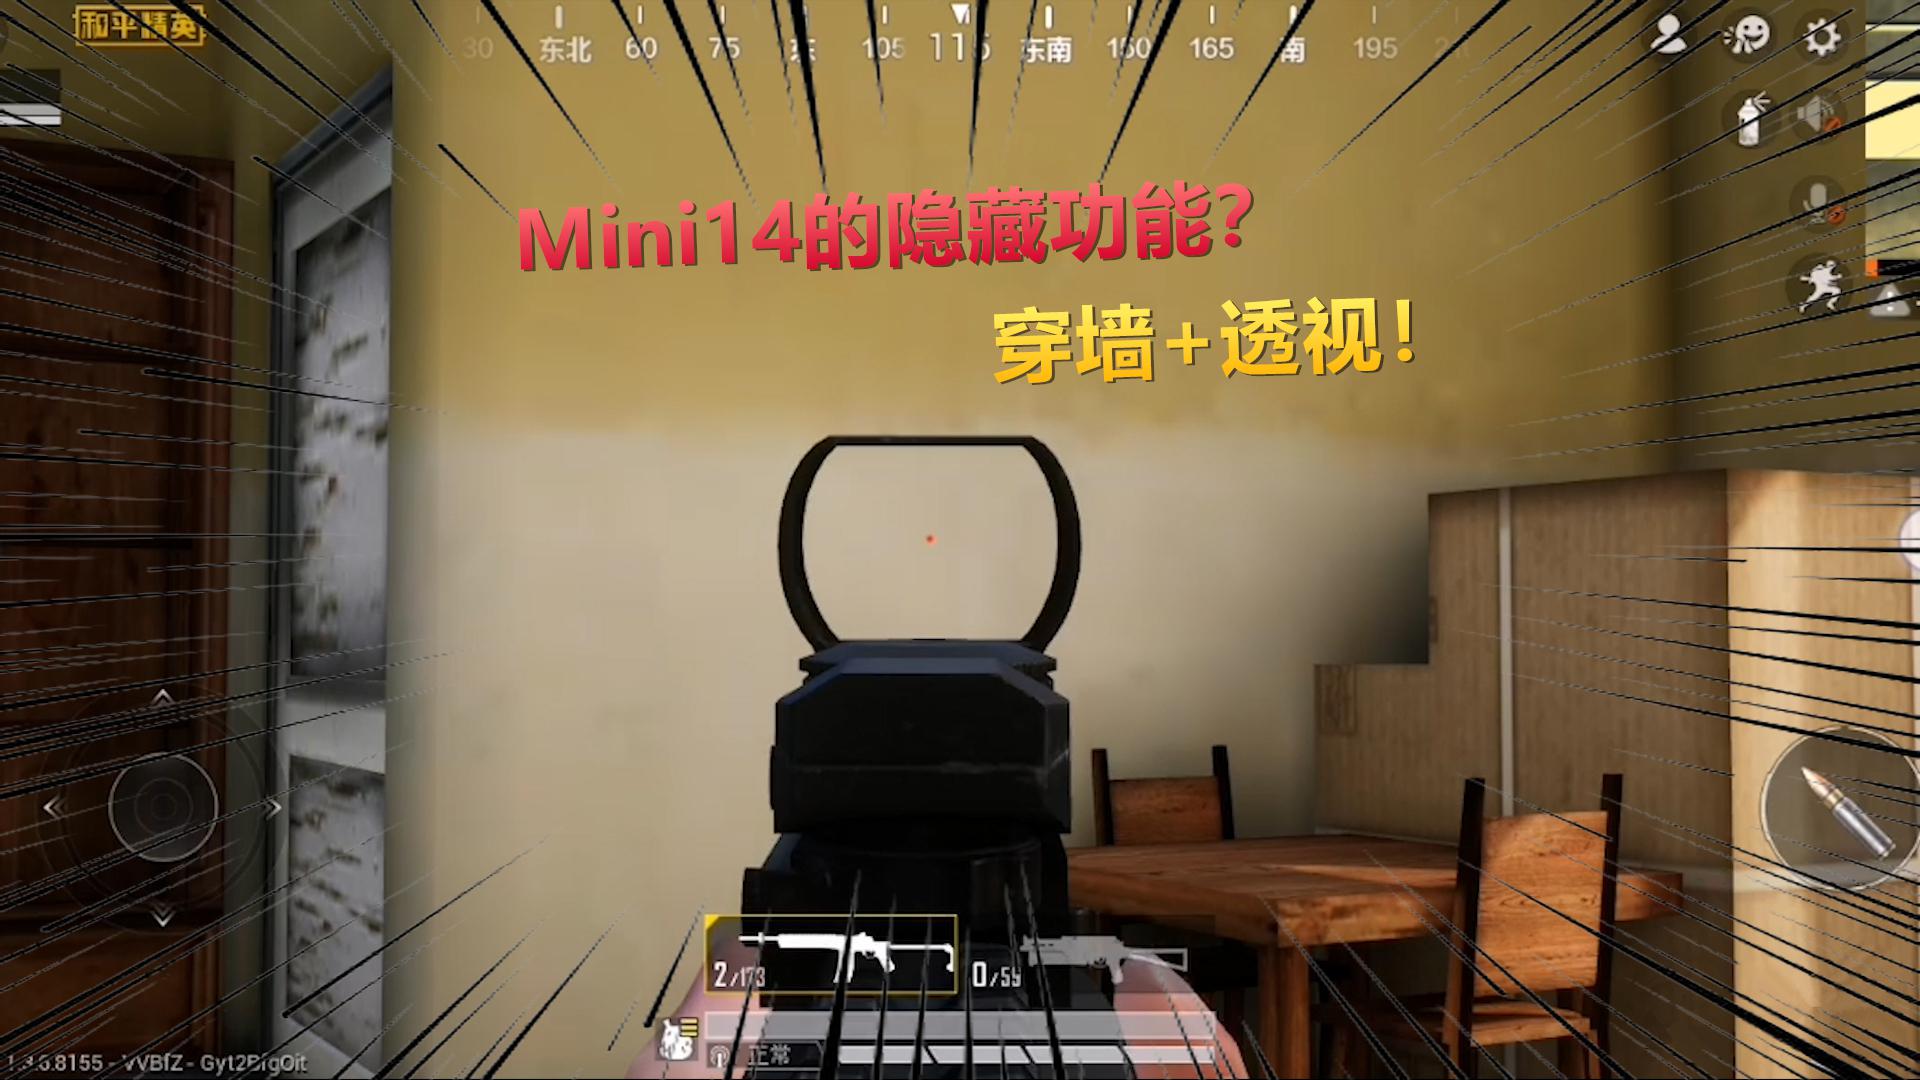 和平精英揭秘真相Mini14有隐藏功能隔着一堵墙射击都有伤害